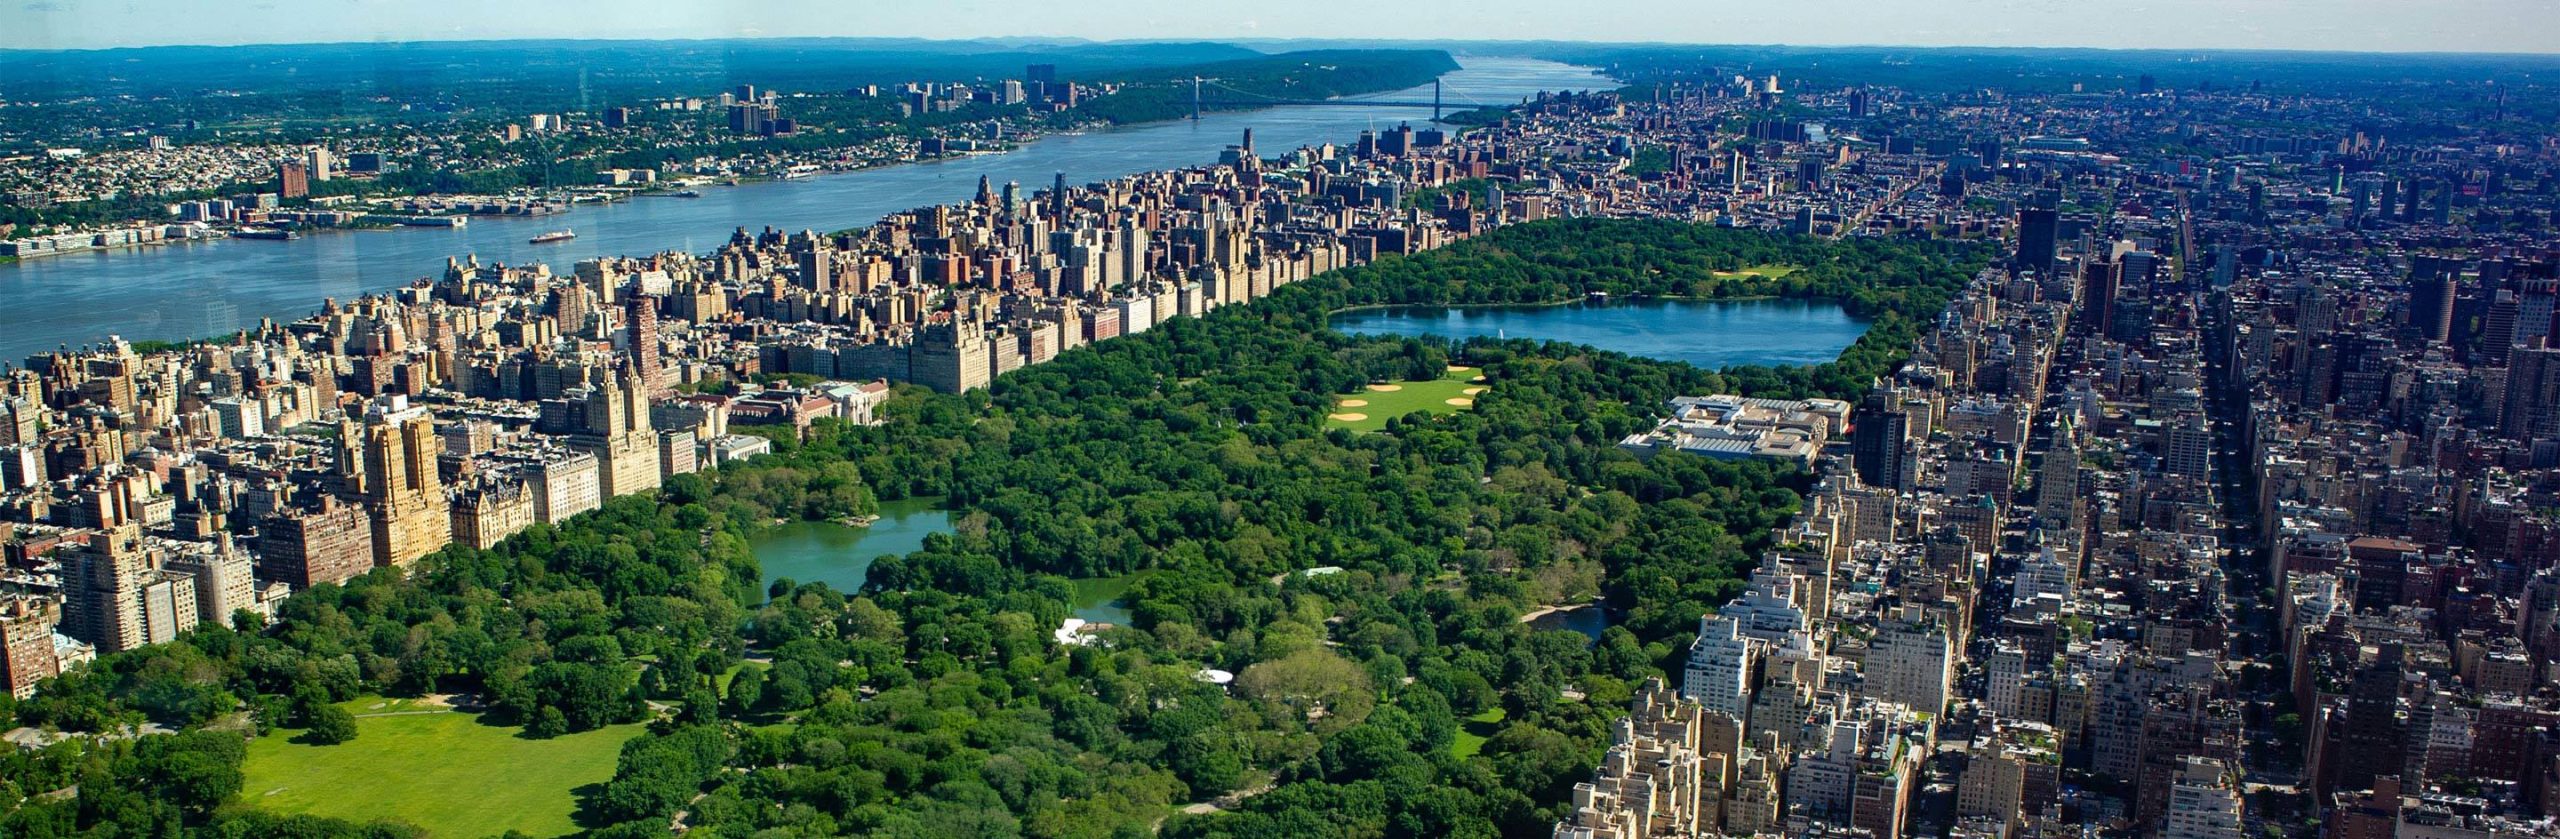 Νέα Υόρκη: Αλλάζει μορφή το Central Park λόγω κορωνοϊού – Στήνουν μονάδες επειγόντων (βίντεο)